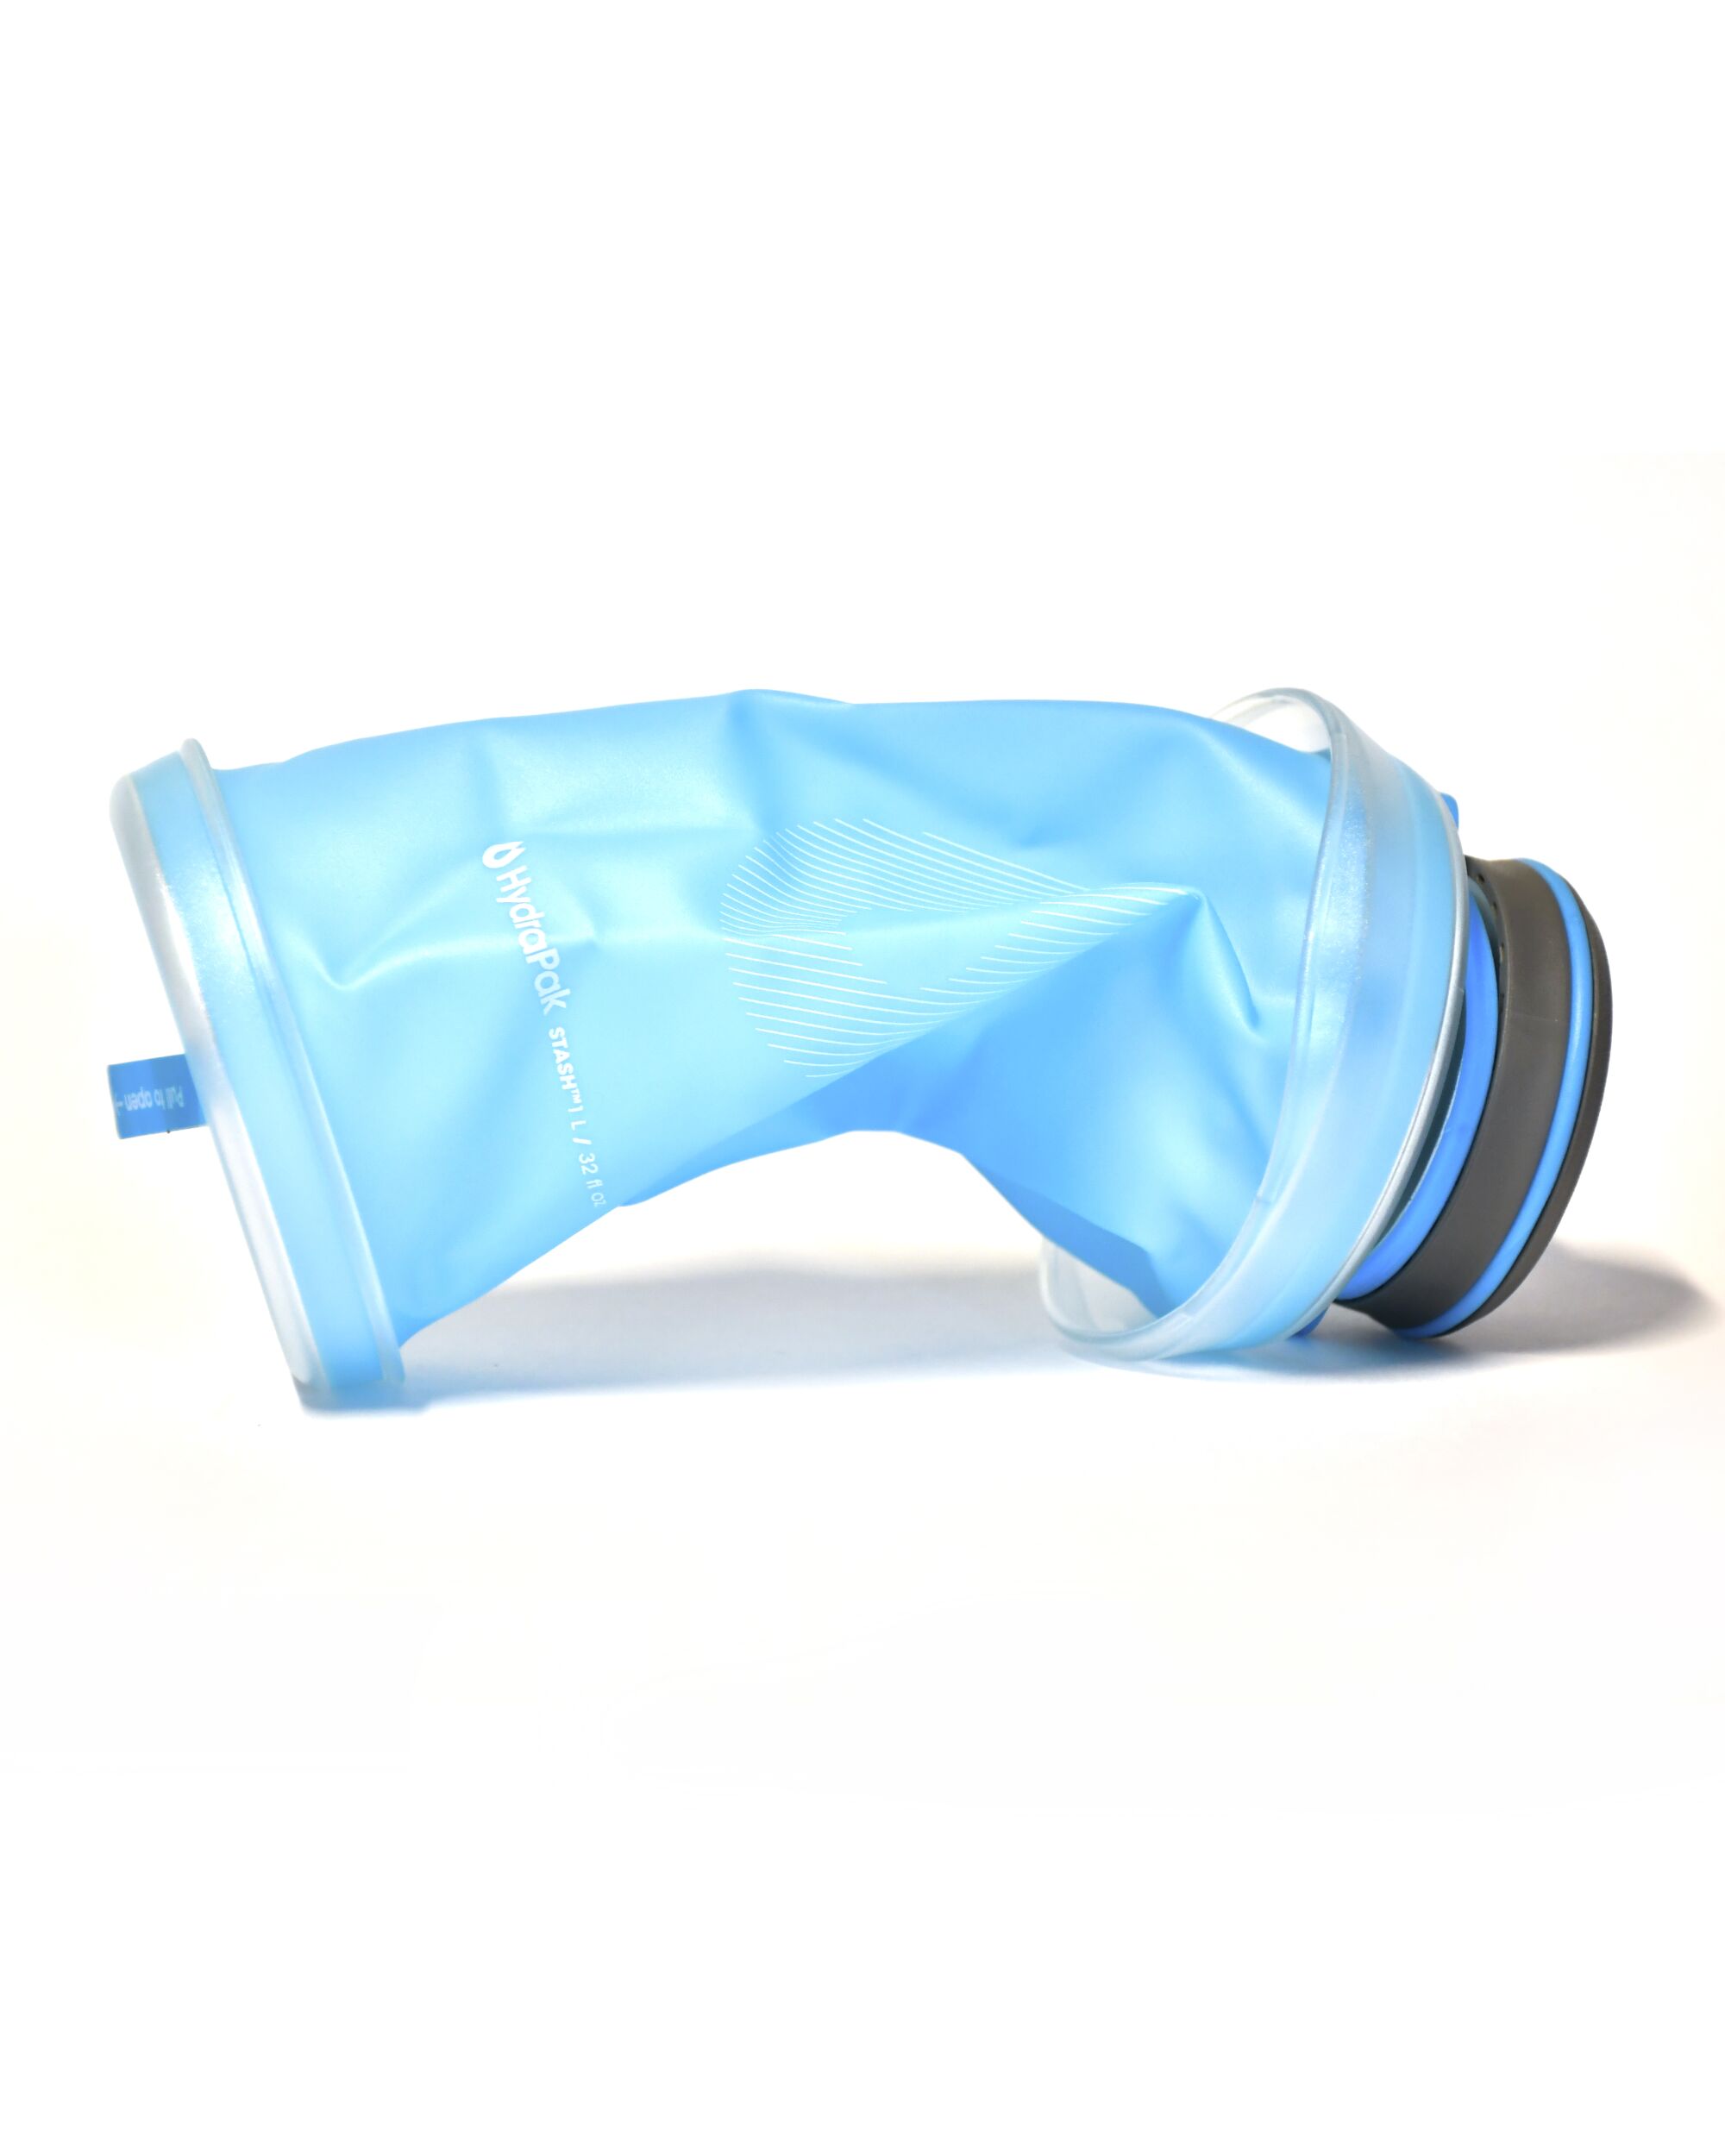 Hydrapak Stash, eine zusammenklappbare 1-Liter-Wasserflasche